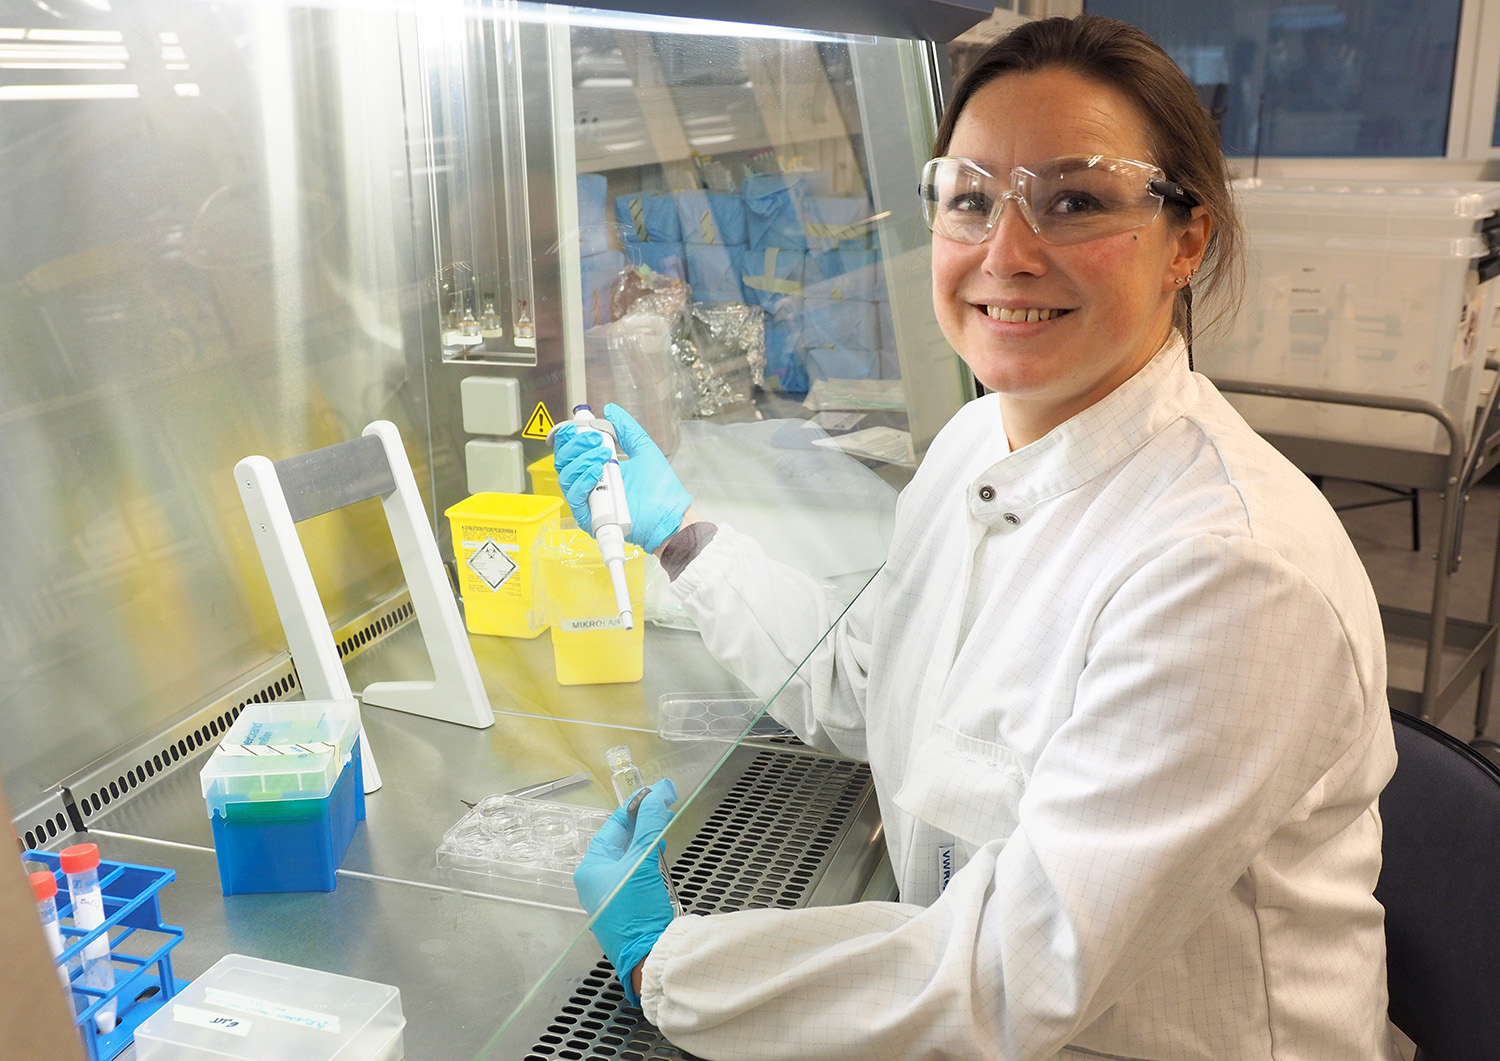 Et bilde av en kvinne i labfrakk på et laboratorium.